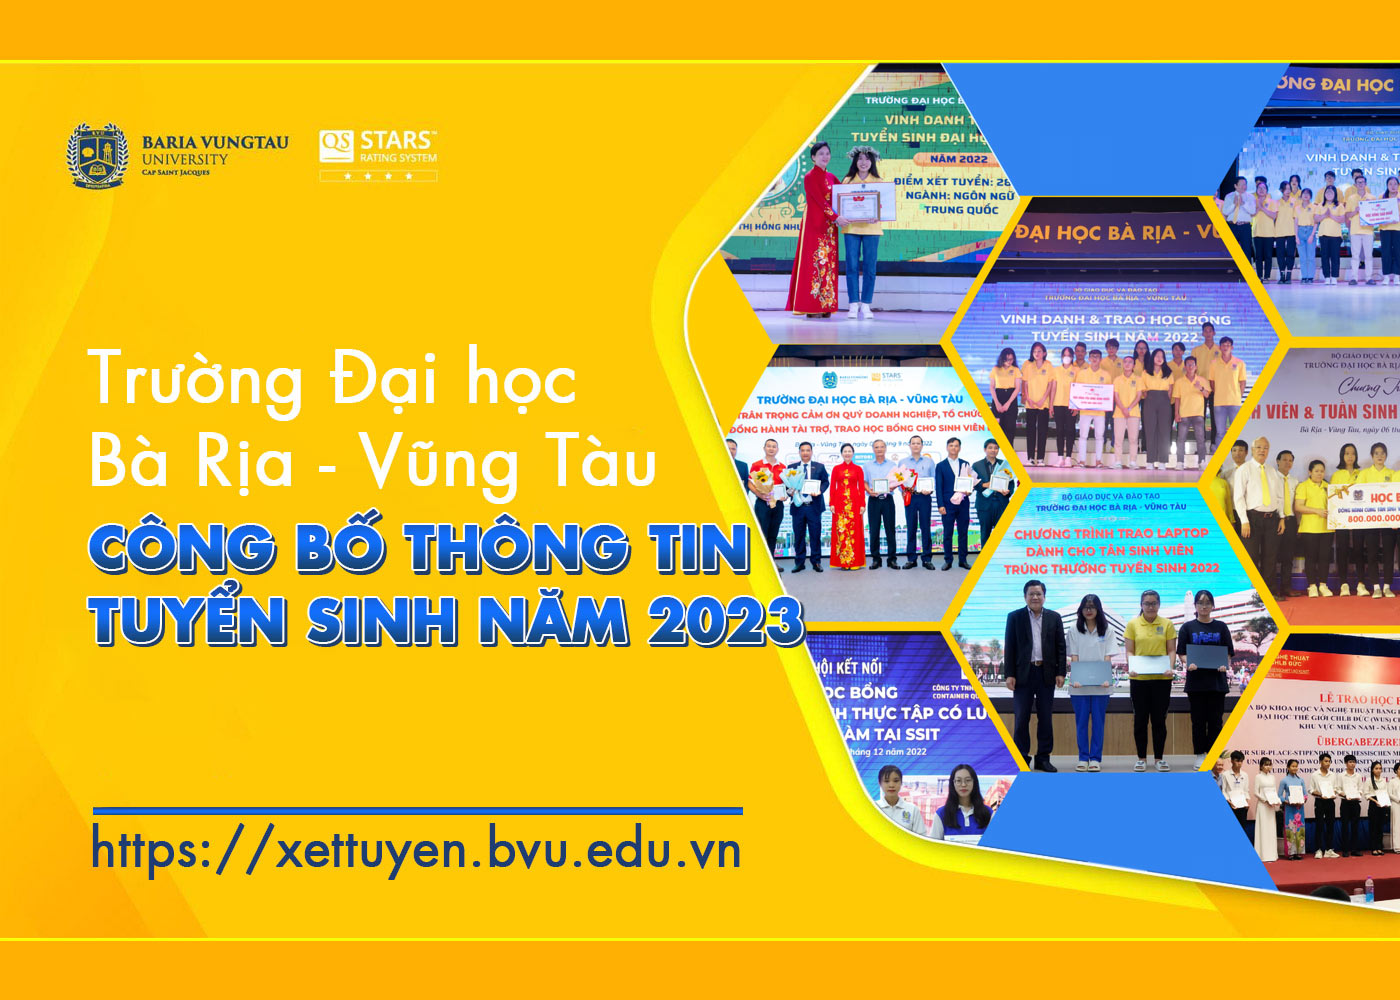 Trường Đại học Bà Rịa - Vũng Tàu công bố thông tin tuyển sinh năm 2023 - Ảnh 1